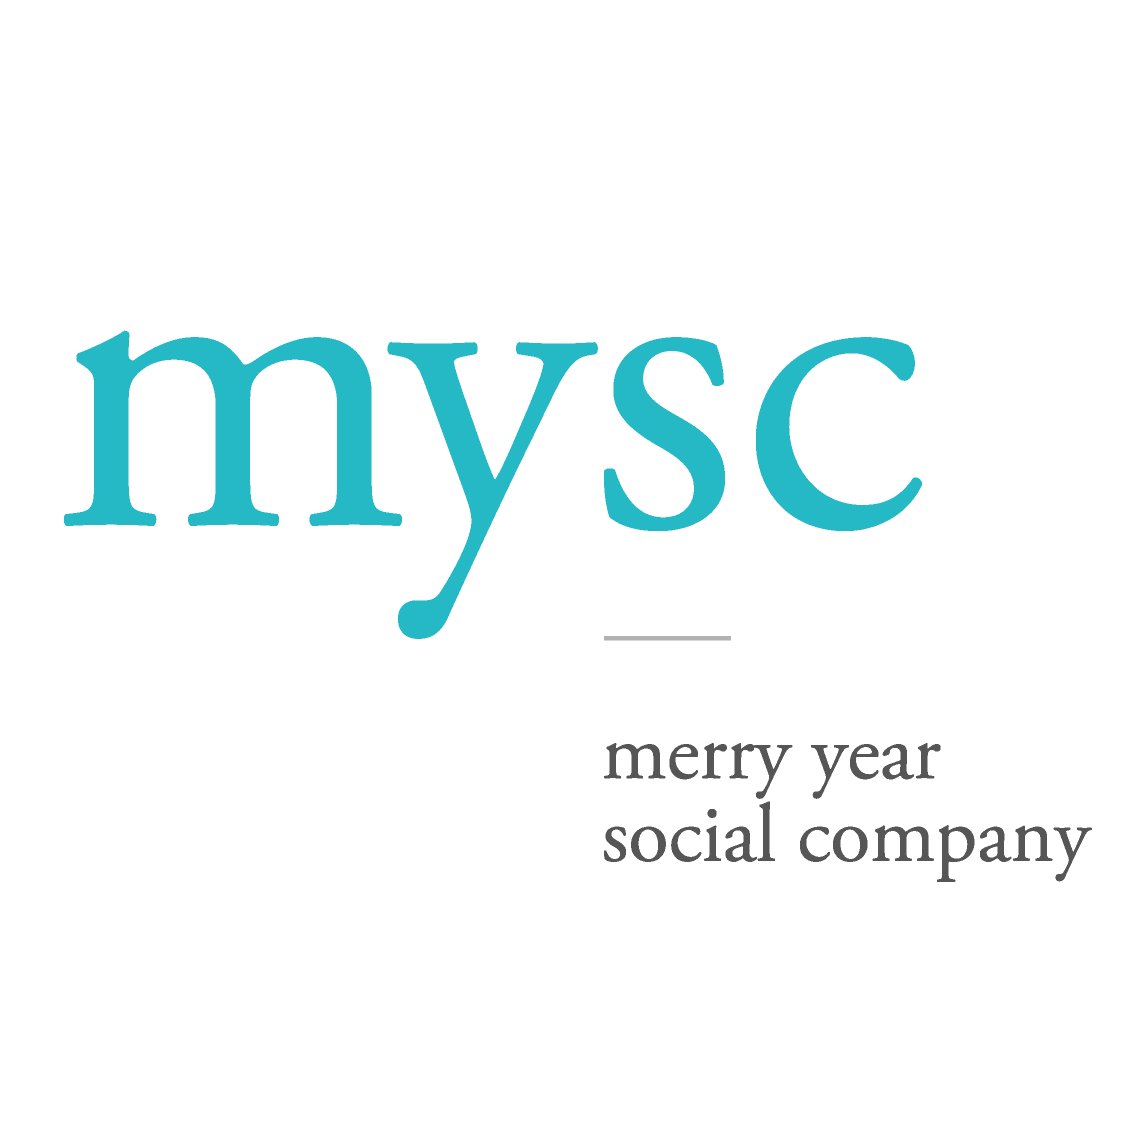 엠와이소셜컴퍼니(MYSC)는 비즈니스를 통한 사회혁신을 지향하는 모든 기관의 파트너로서, 컨설팅, 인큐베이팅, 임팩트투자를 진행하고 있습니다.